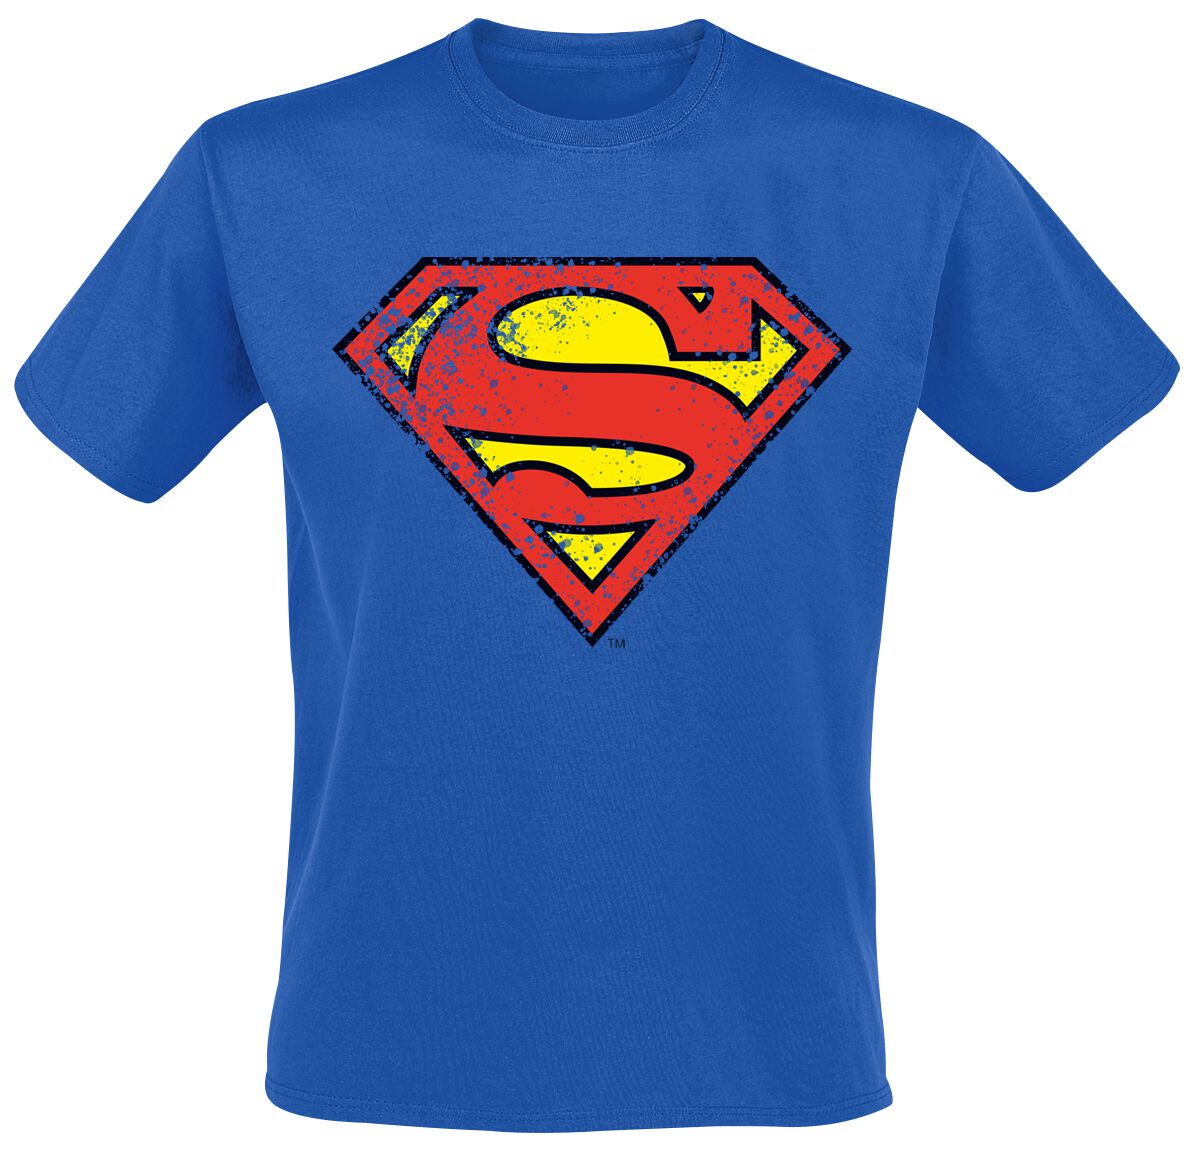 Superman - DC Comics T-Shirt - Crest - S bis L - für Männer - Größe L - blau  - EMP exklusives Merchandise! von Superman